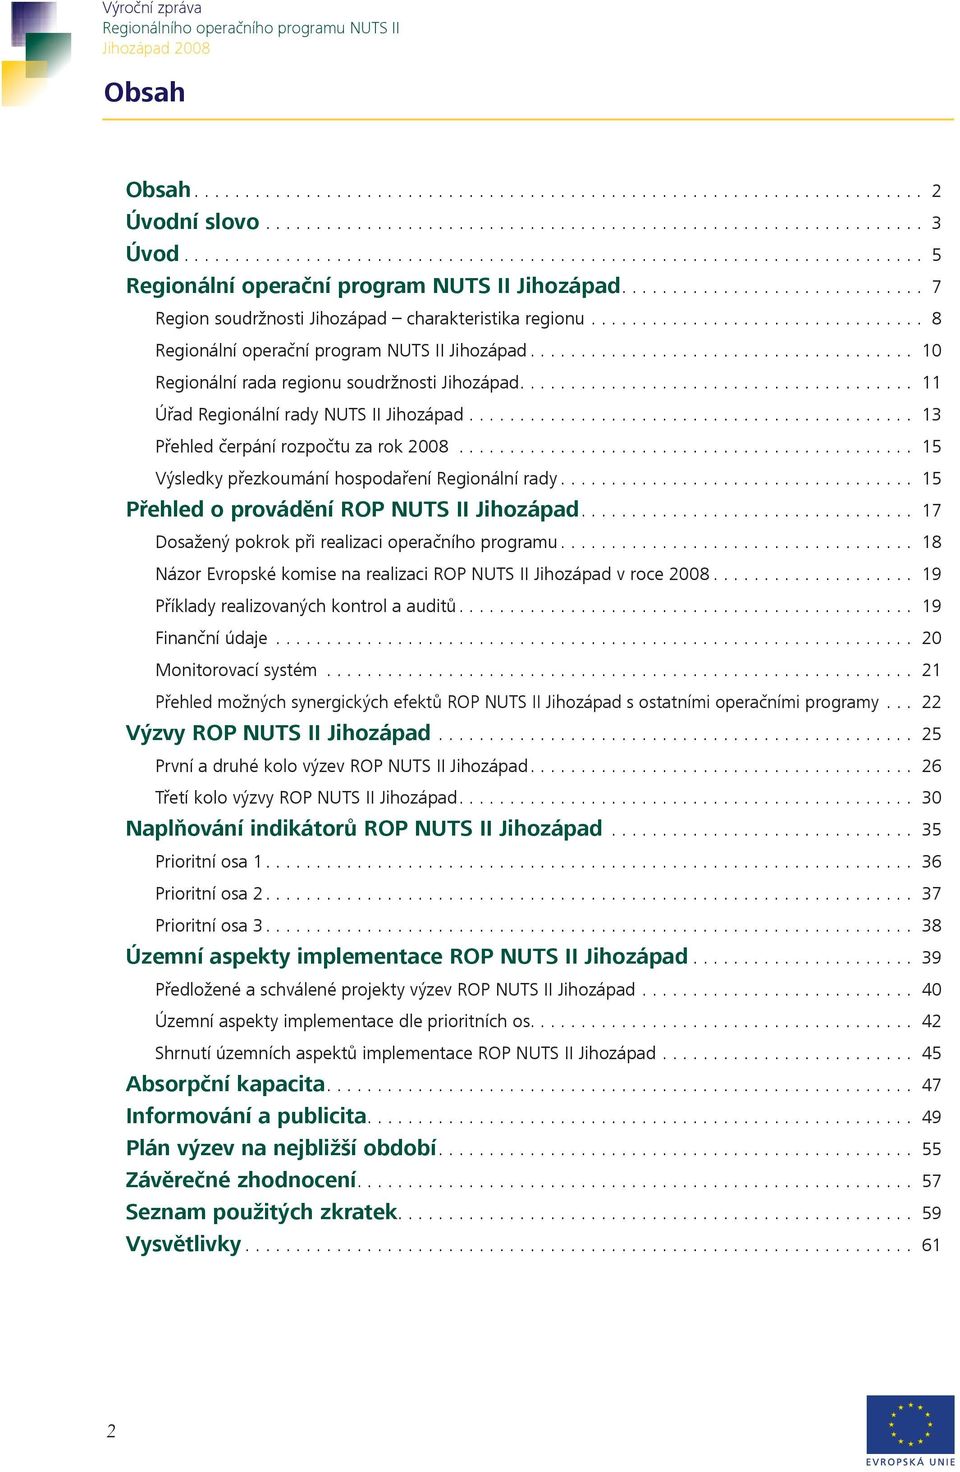 ... 15 Přehled o provádění ROP NUTS II Jihozápad.... 17 Dosažený pokrok při realizaci operačního programu.... 18 Názor Evropské komise na realizaci ROP NUTS II Jihozápad v roce 2008.